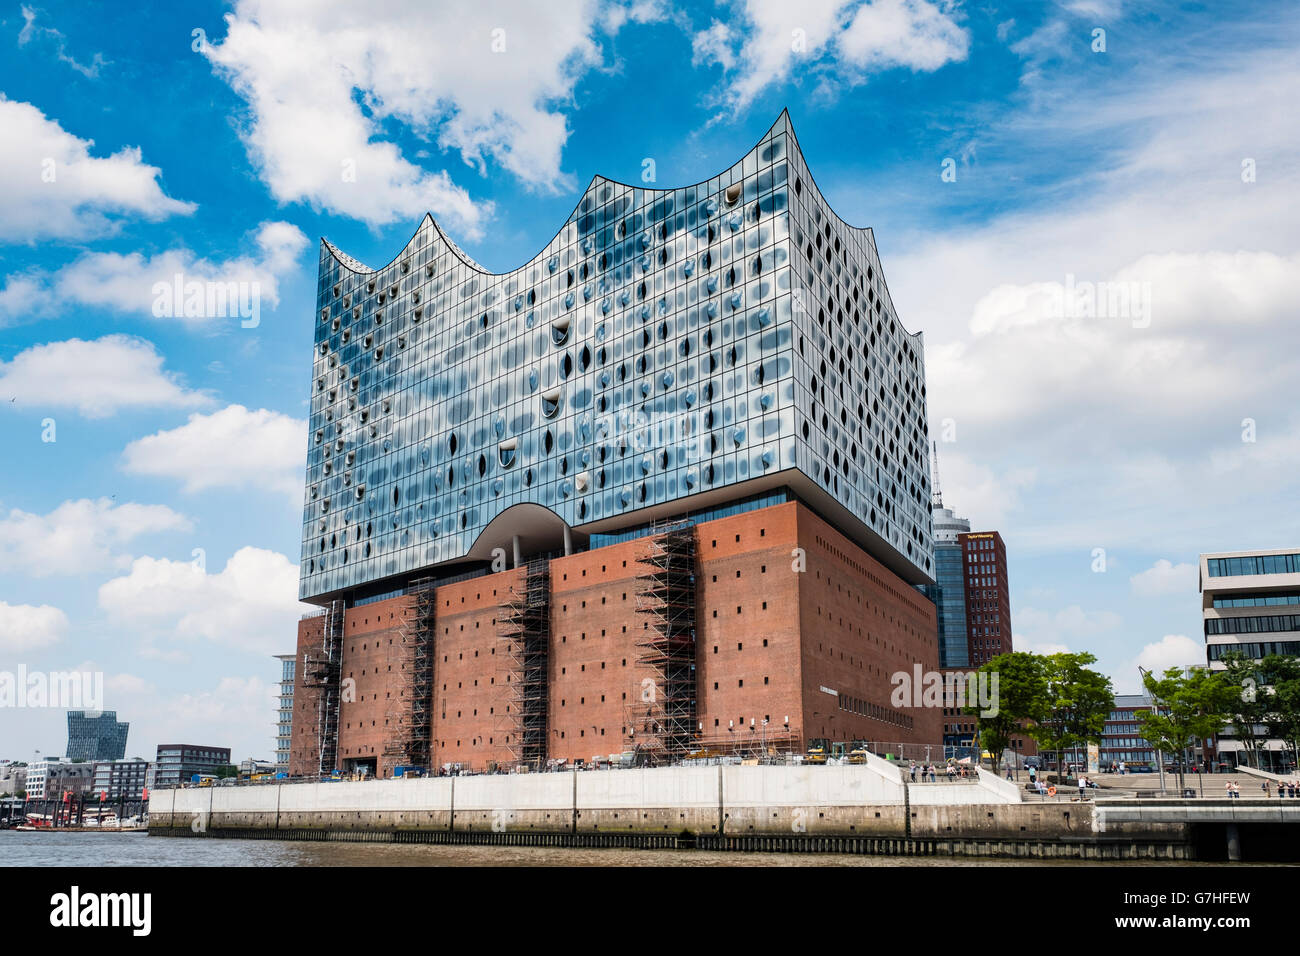 Avis de nouvelle salle de concert Elbphilharmonie en voie d'achèvement sur l'Elbe à Hambourg Allemagne Banque D'Images